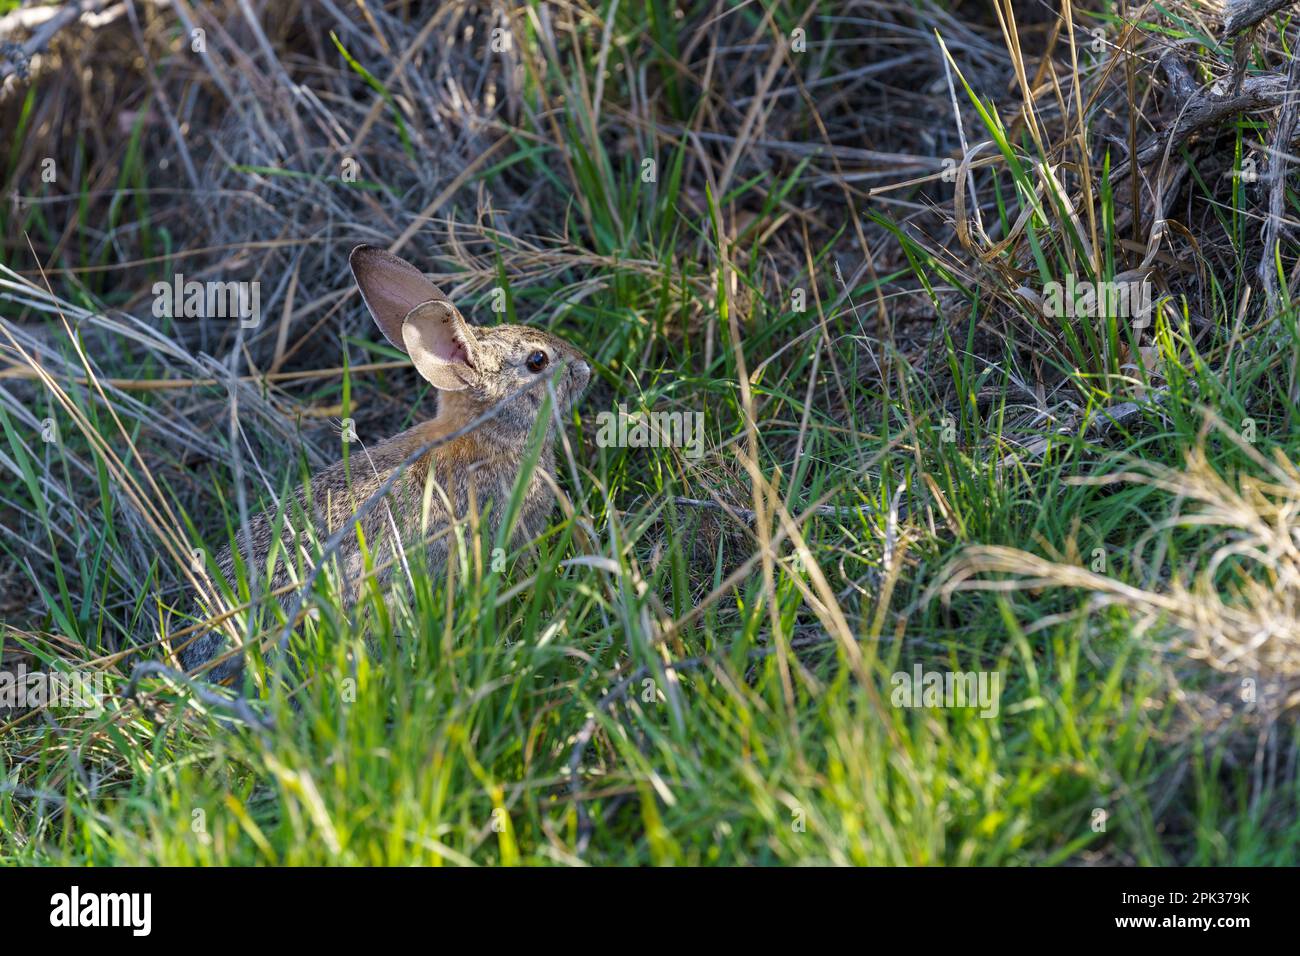 Coniglio Cottontail deserto seduto ancora in un pezzetto di erba verde Foto Stock